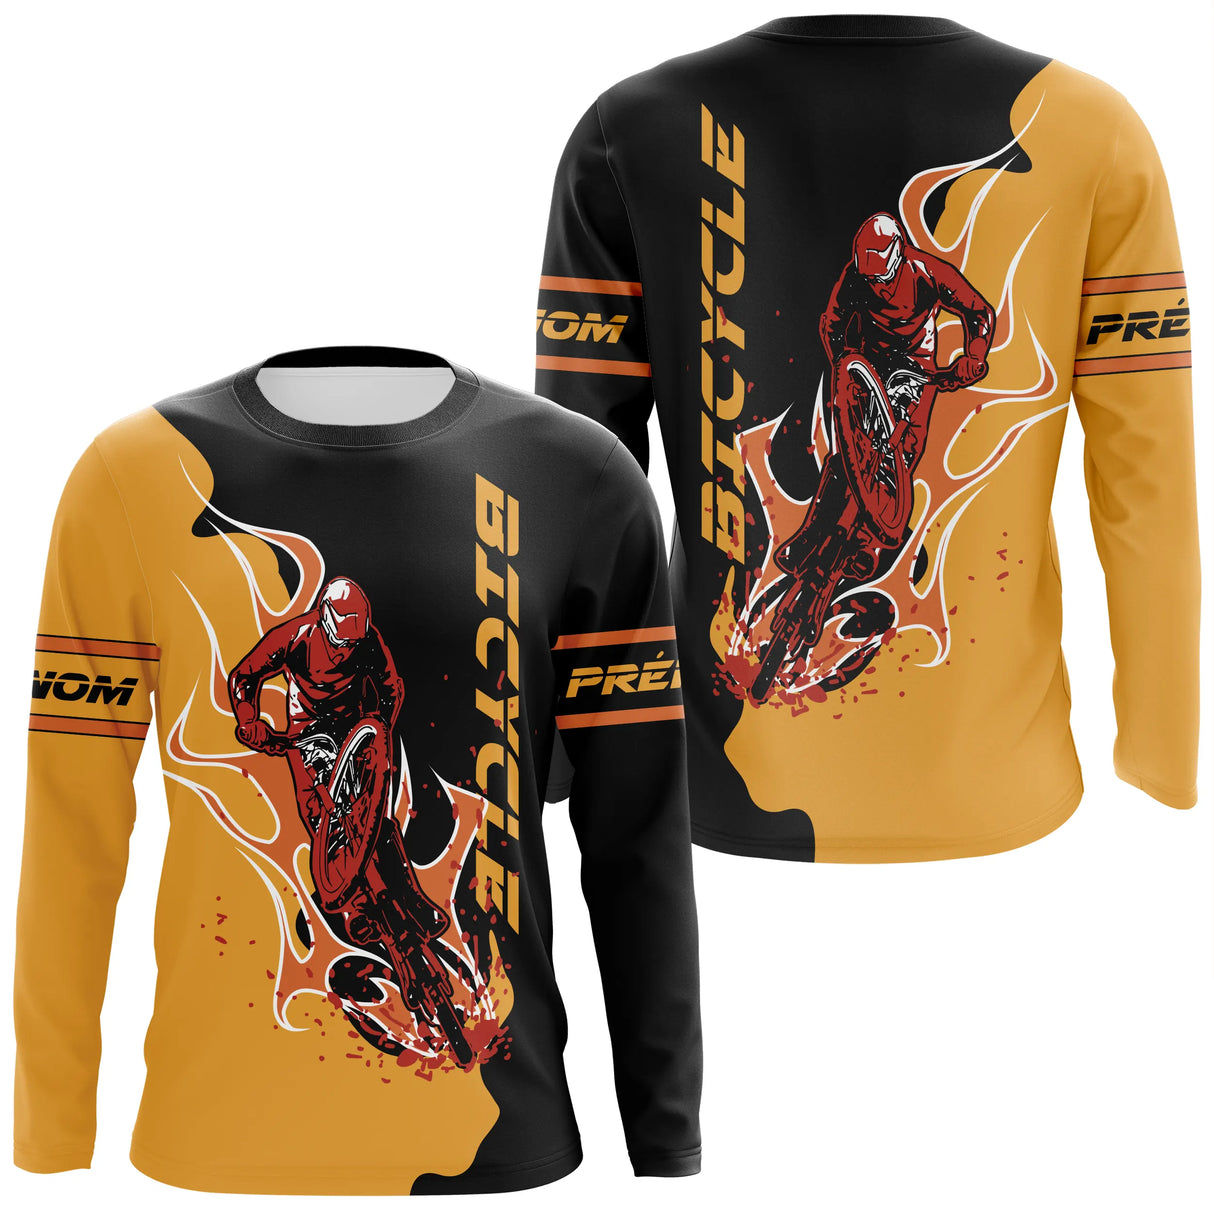 Maillot De Cyclisme Personnalisé, Cadeau Idéal Cycliste Et Fans De Vélo - CT07022436 Anti UV T-shirt Manches Longues Unisexe